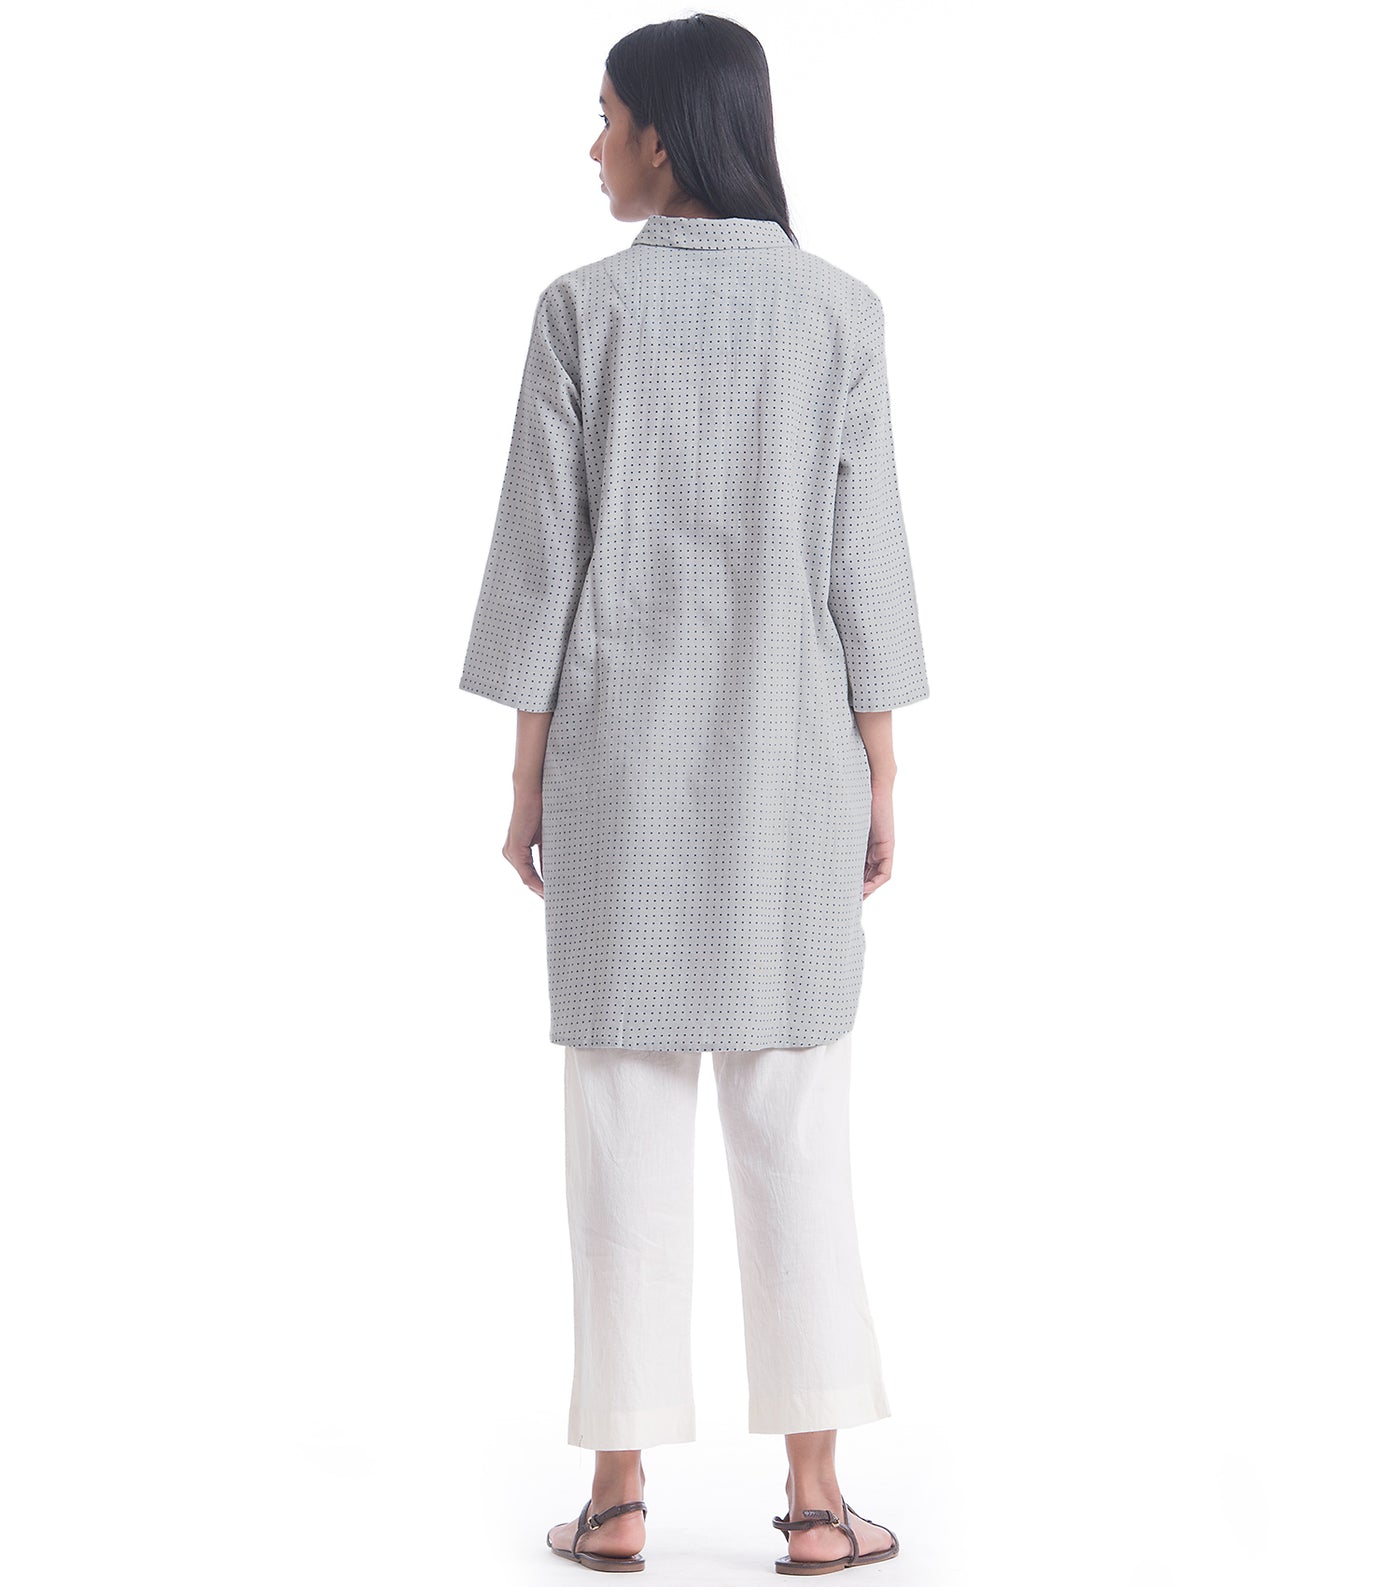 Grey Printed Khadi Shirt